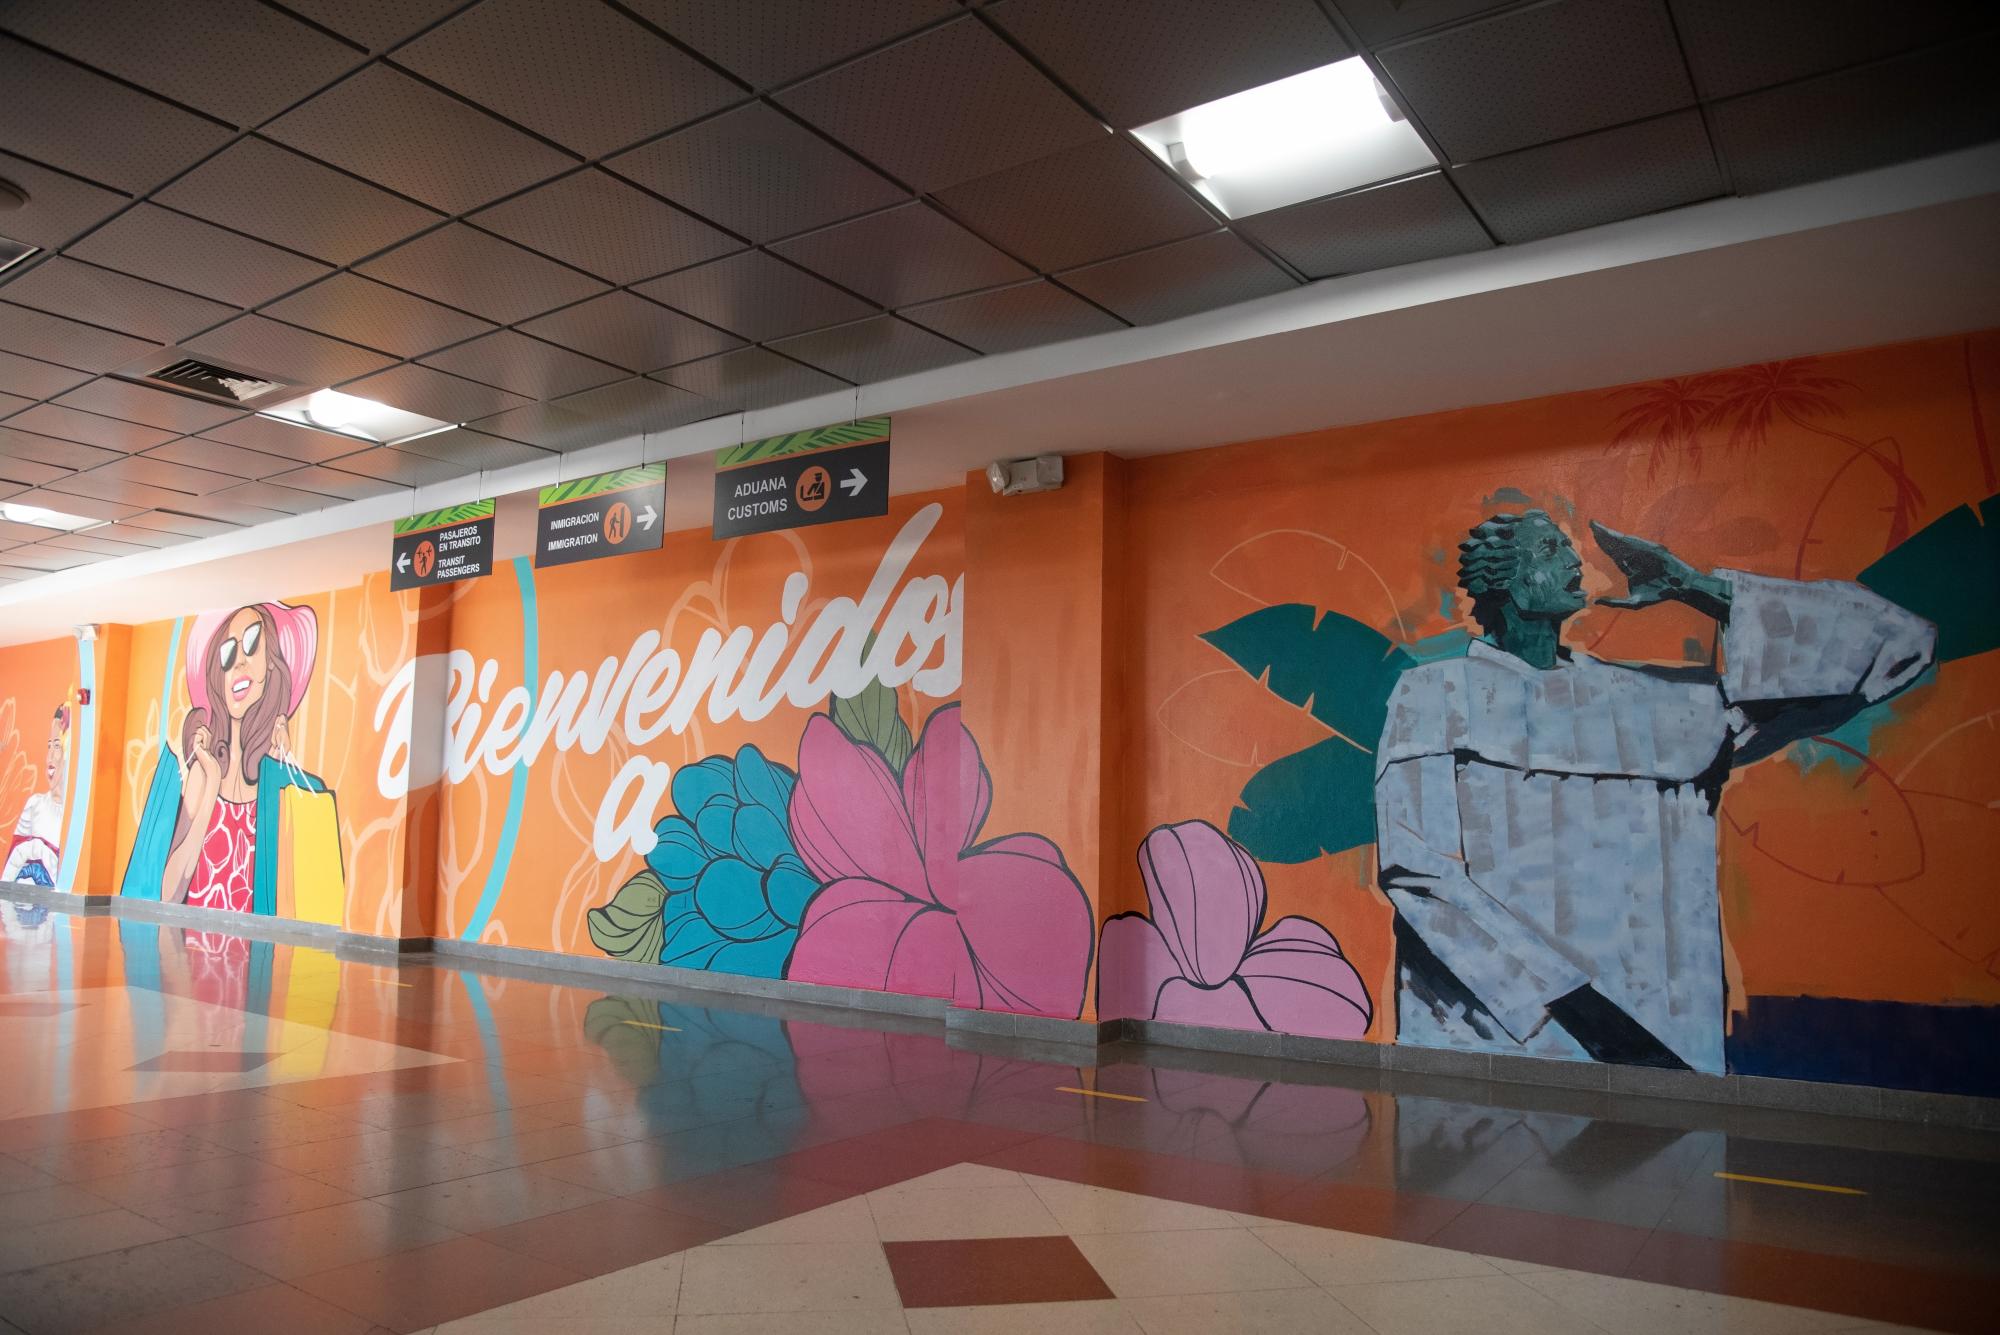 Los colores vivos predominan en las obras pintadas sobre las paredes del Aeropuerto Las Américas. (Foto: Dania Acevedo / Diario Libre)